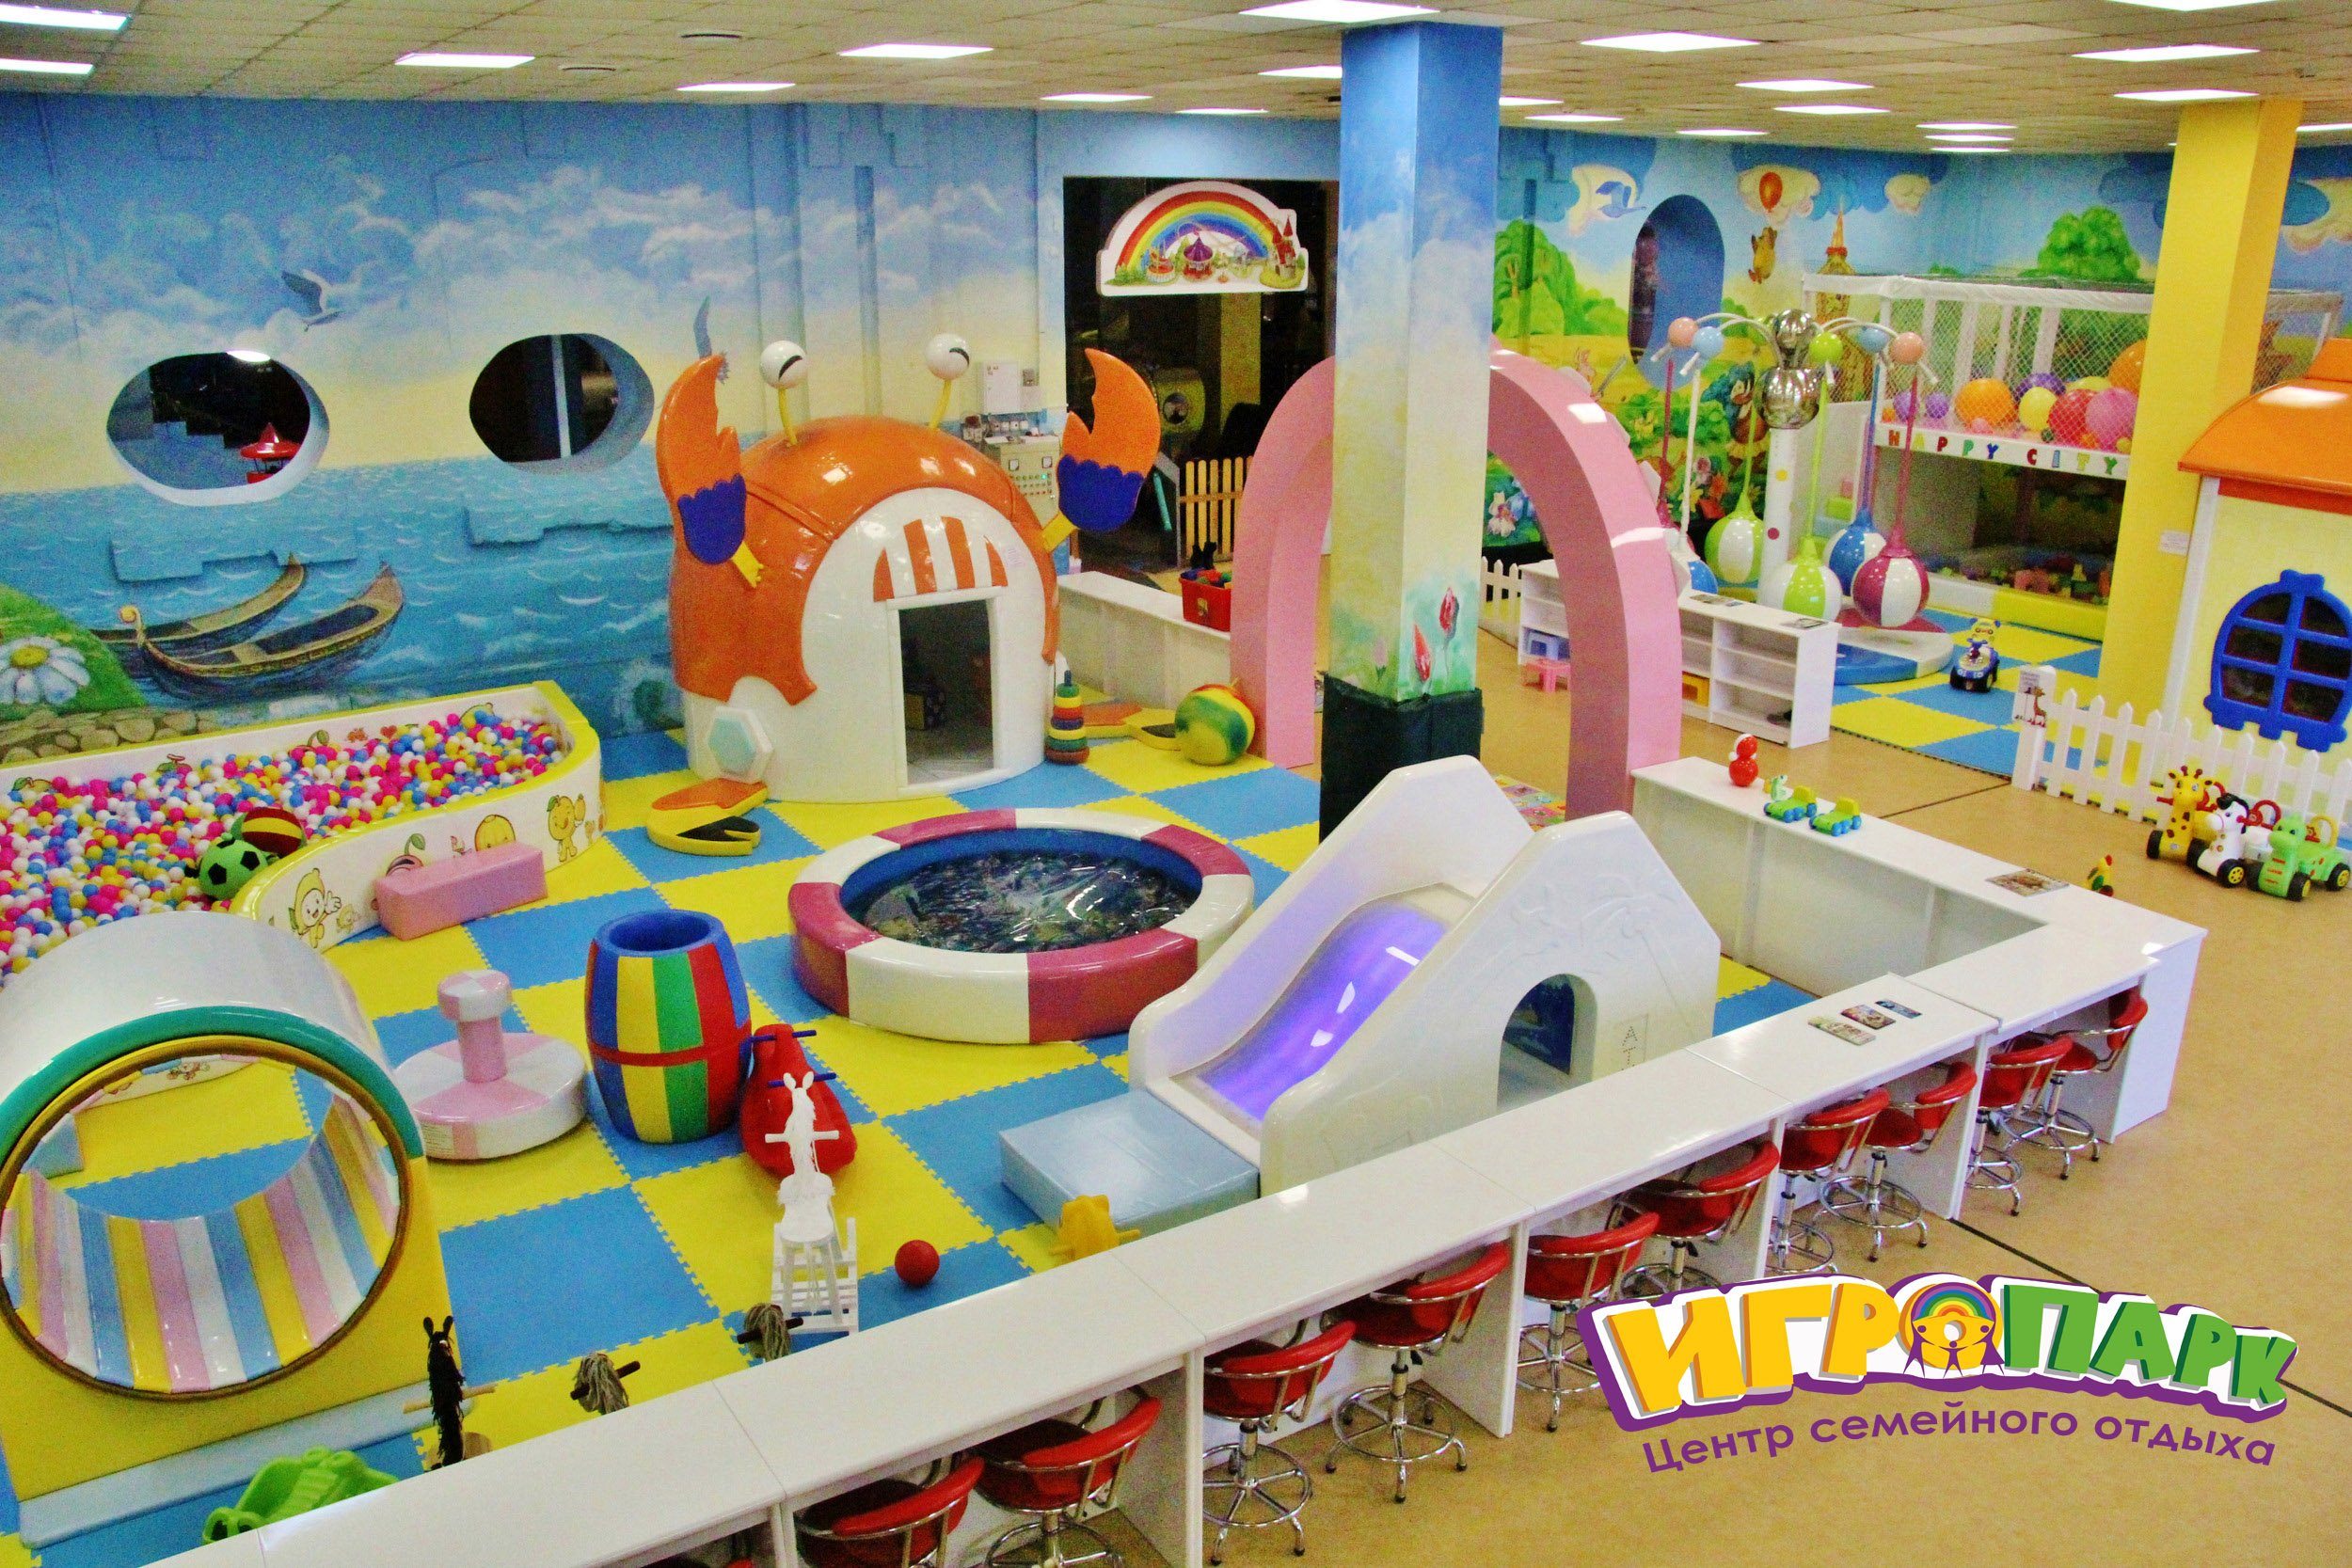 Сколько игровых зон. Детская игровая комната. Детские игровые зоны. Развлекательная комната для детей. Игровая зона для детей.